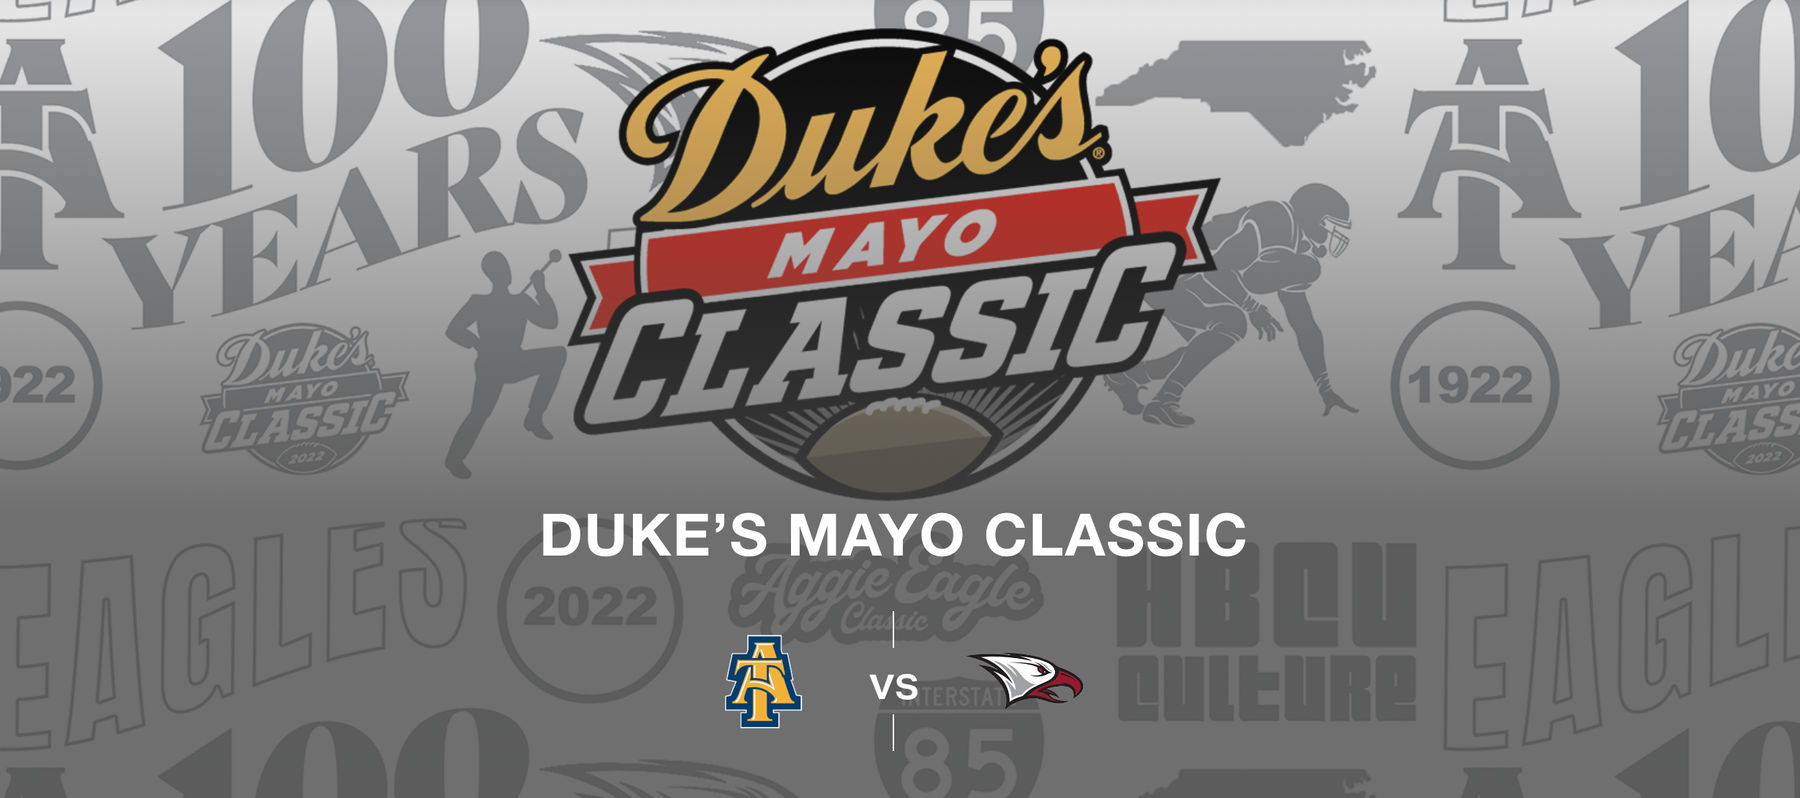 Duke's Mayo Classic Uptown Charlotte, NC